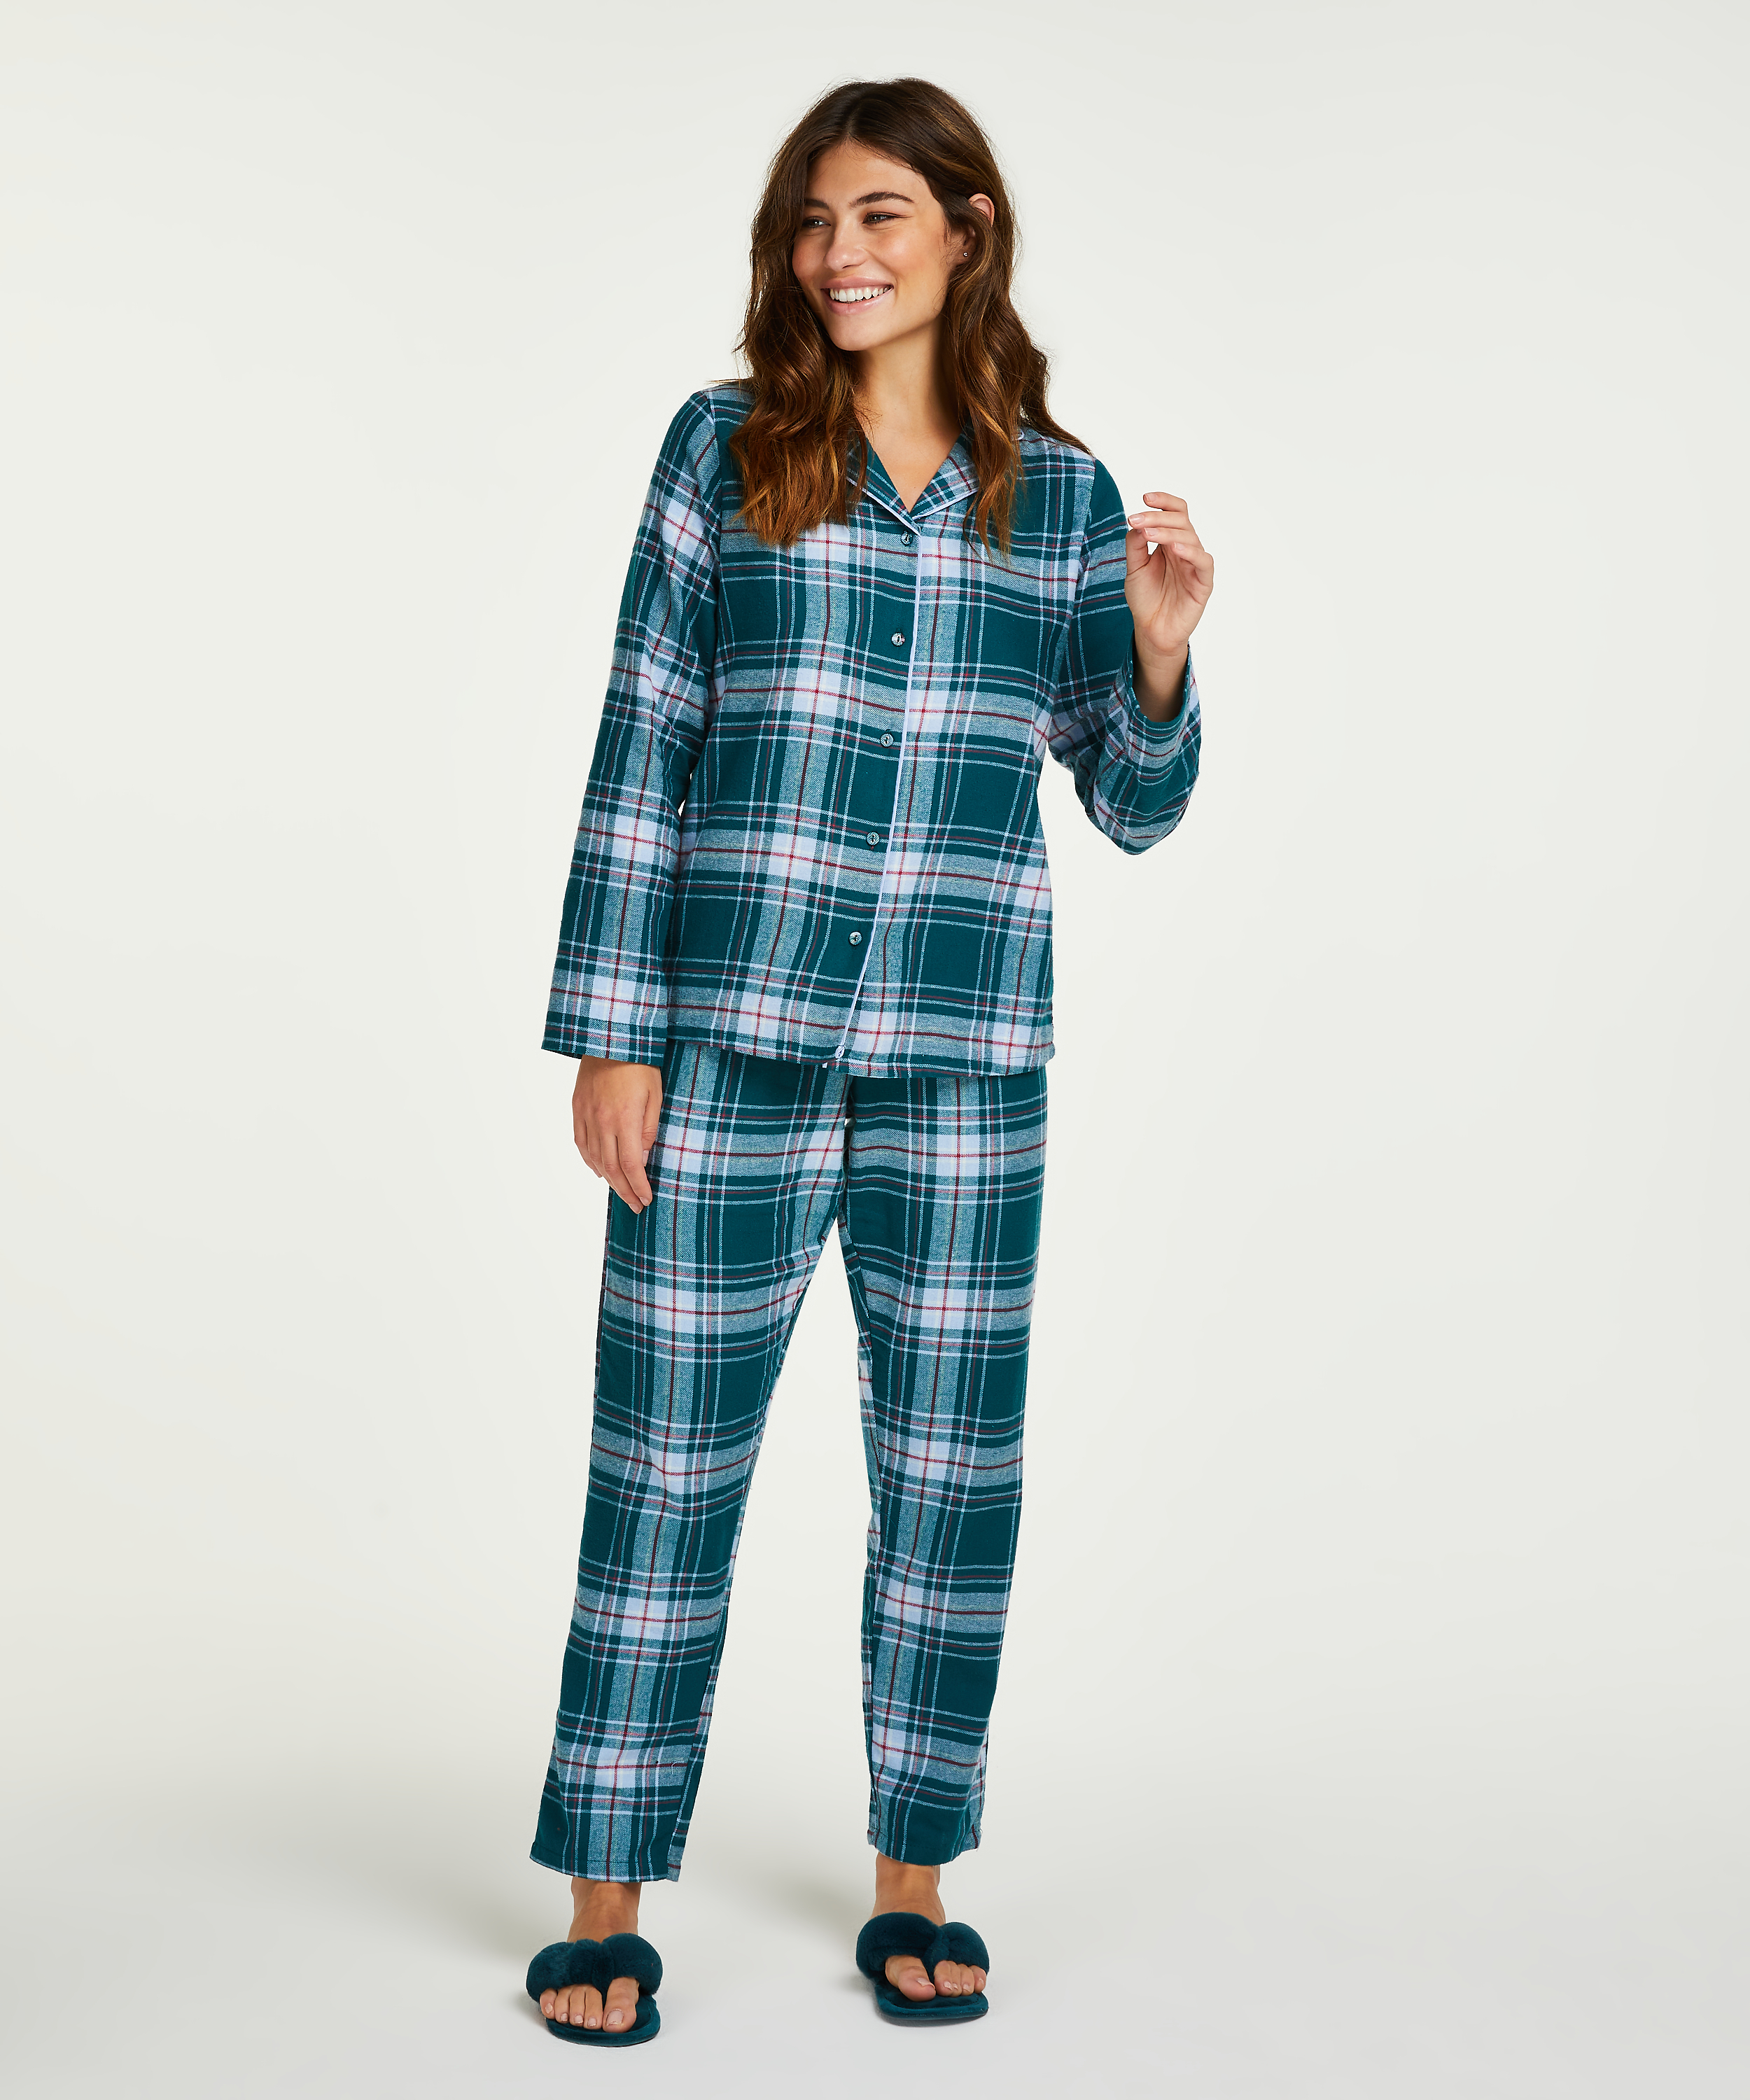 simply Opinion End Pyjama set for €34.99 - Pajamas - Hunkemöller